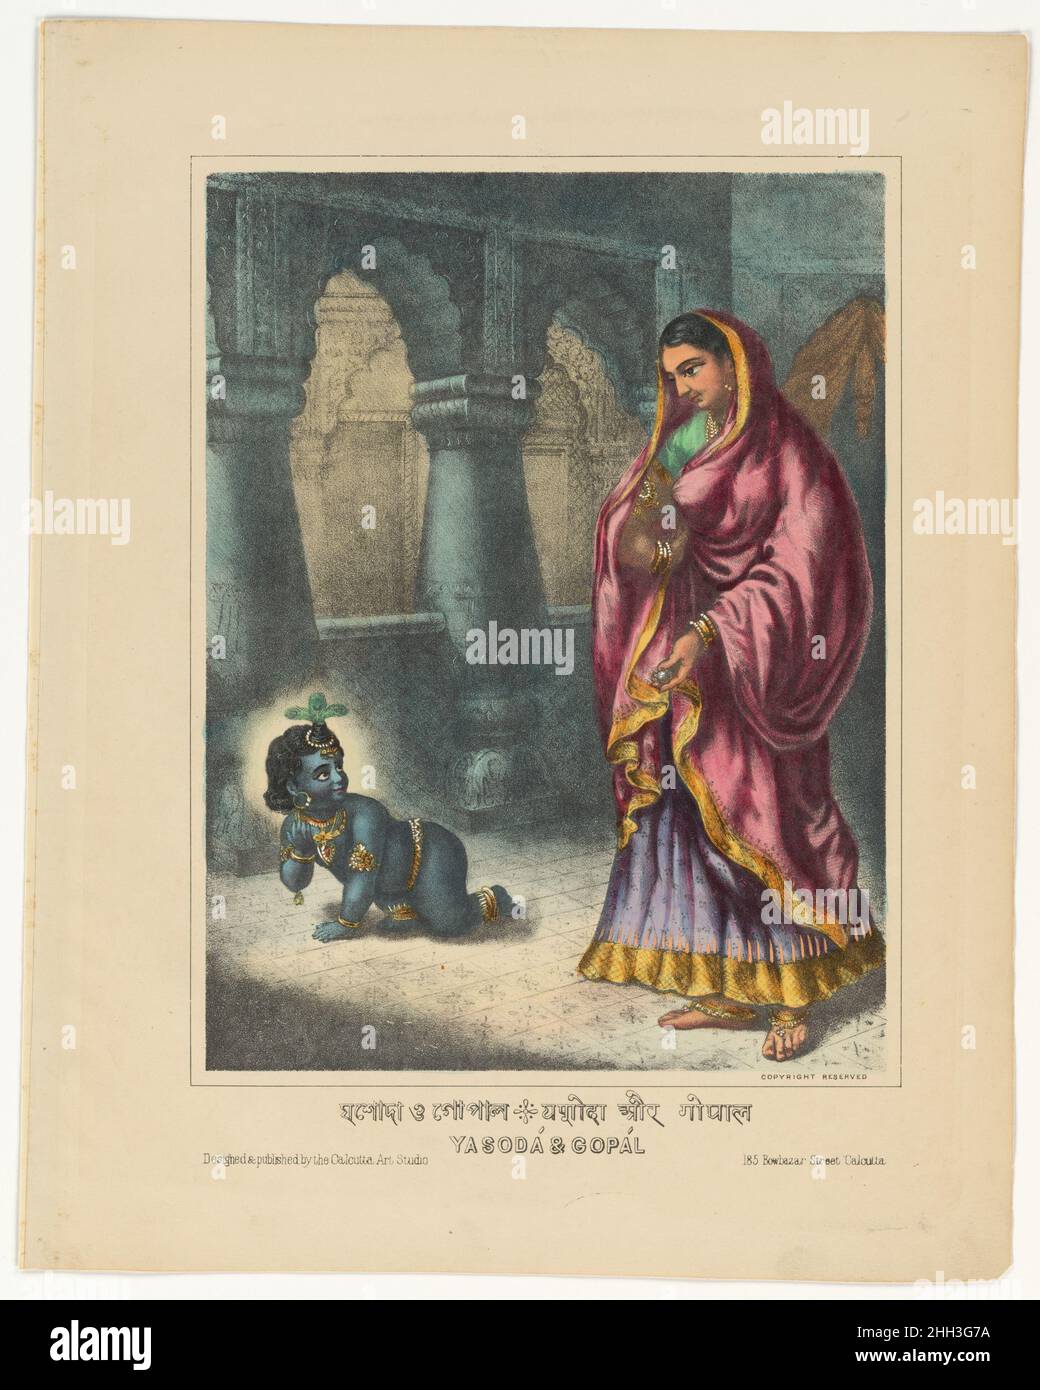 Yashoda und Gopal 1878–1883 Westbengalen, Kalkutta nach der Geburt des Säuglings Krishna mit Pflegeeltern im Dorf Vrindavan wurde er von Yashoda wie ihr eigenes Kind großgezogen. In diesem zarten Bild sehen wir den Säugling Krishna (Bala-Krishna), der spielerisch kriecht, und seine Pflegemutter ihm eine Kugel Butter darbietet, um seine Aufmerksamkeit zu erregen. Diese Szene spielt mit dem oft dargestellten Motiv Krishnas, indem er seinen überlegenen Intellekt dazu verwendet, Butter und Buttermilch schelmisch zu stehlen, selbst wenn sie außerhalb der Reichweite eines Kindes platziert werden. Trotz Krishna wurde mit einer bescheidenen Dorffamilie Stockfoto